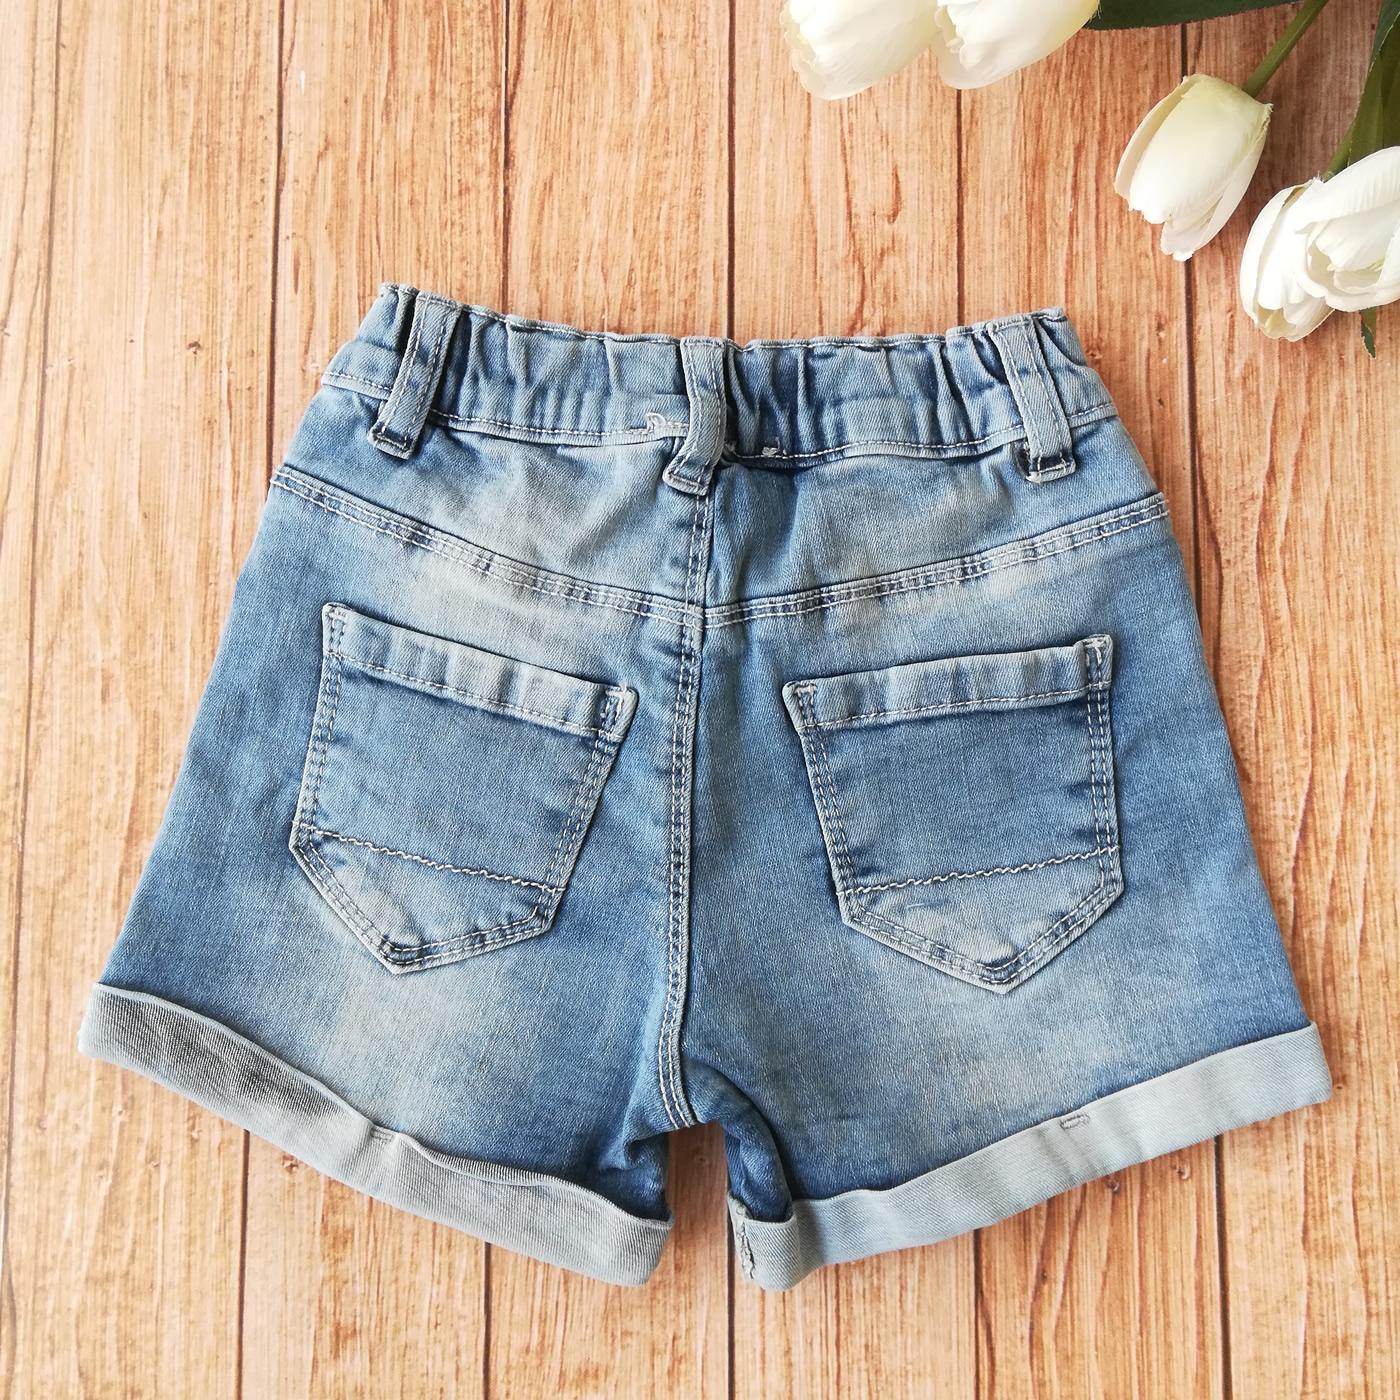 Дитячі джинсові шорти для дівчинки (854-003), Cichlid